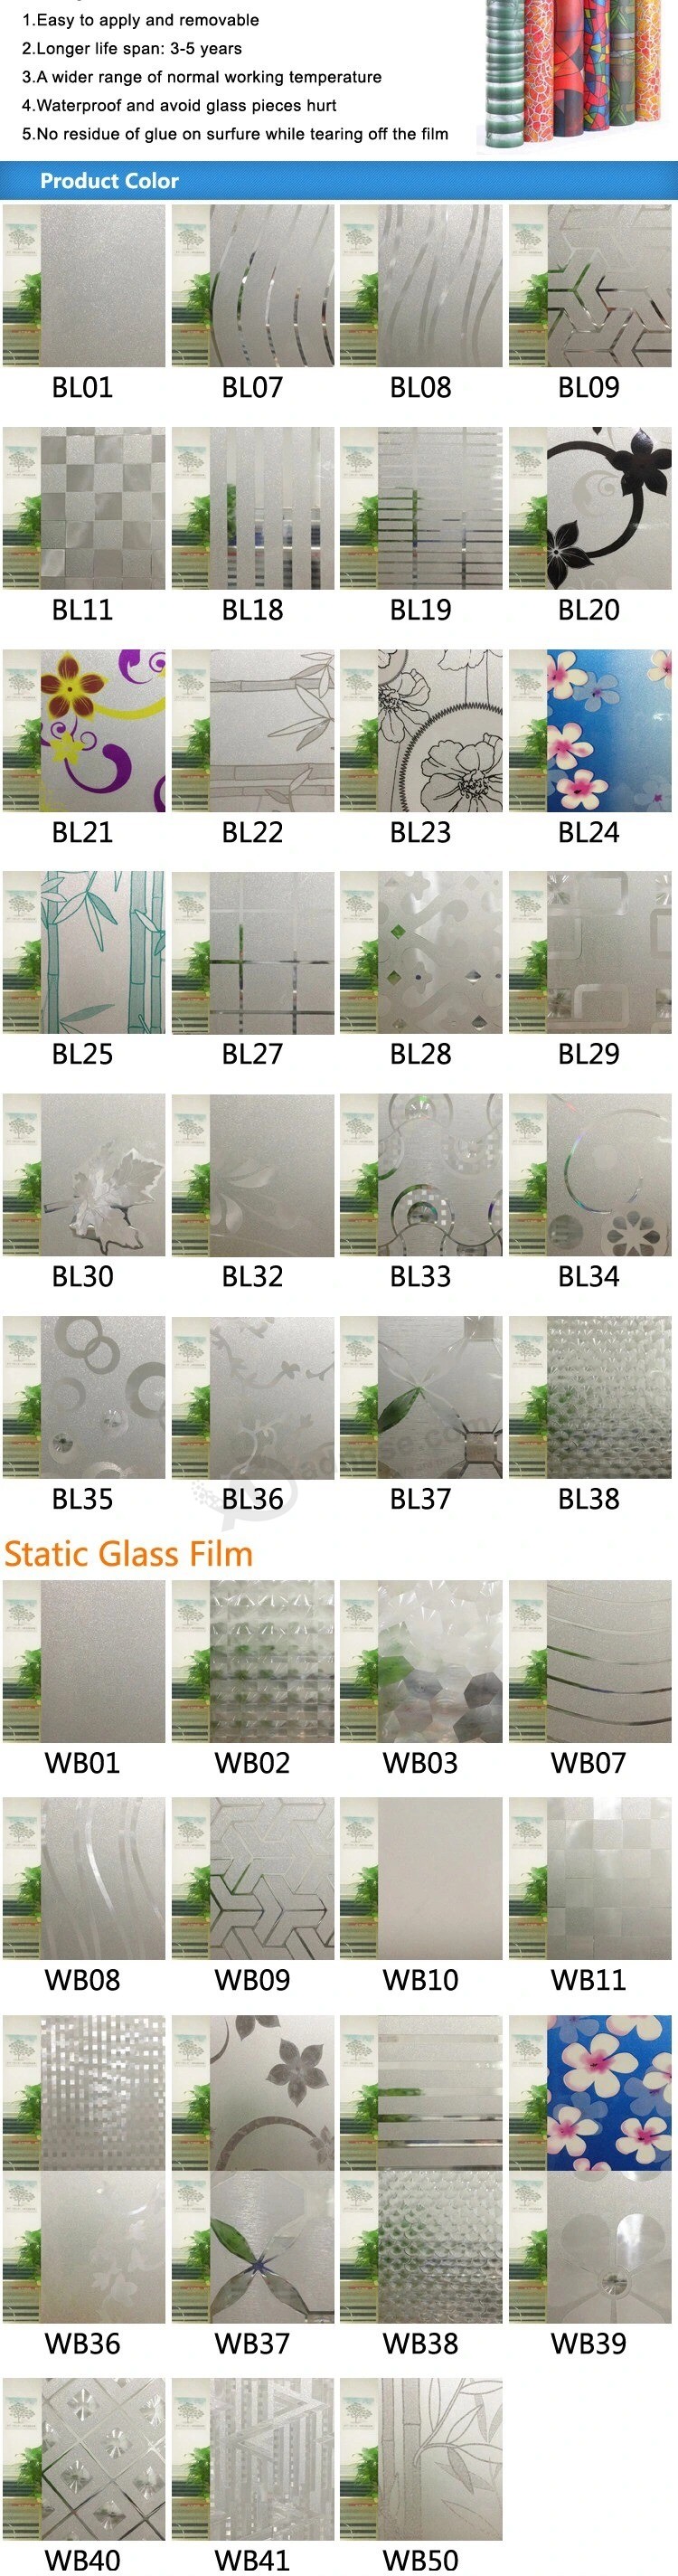 Película de vidrio de ventana coloreada para decoración del hogar Película transparente de vidrio transparente